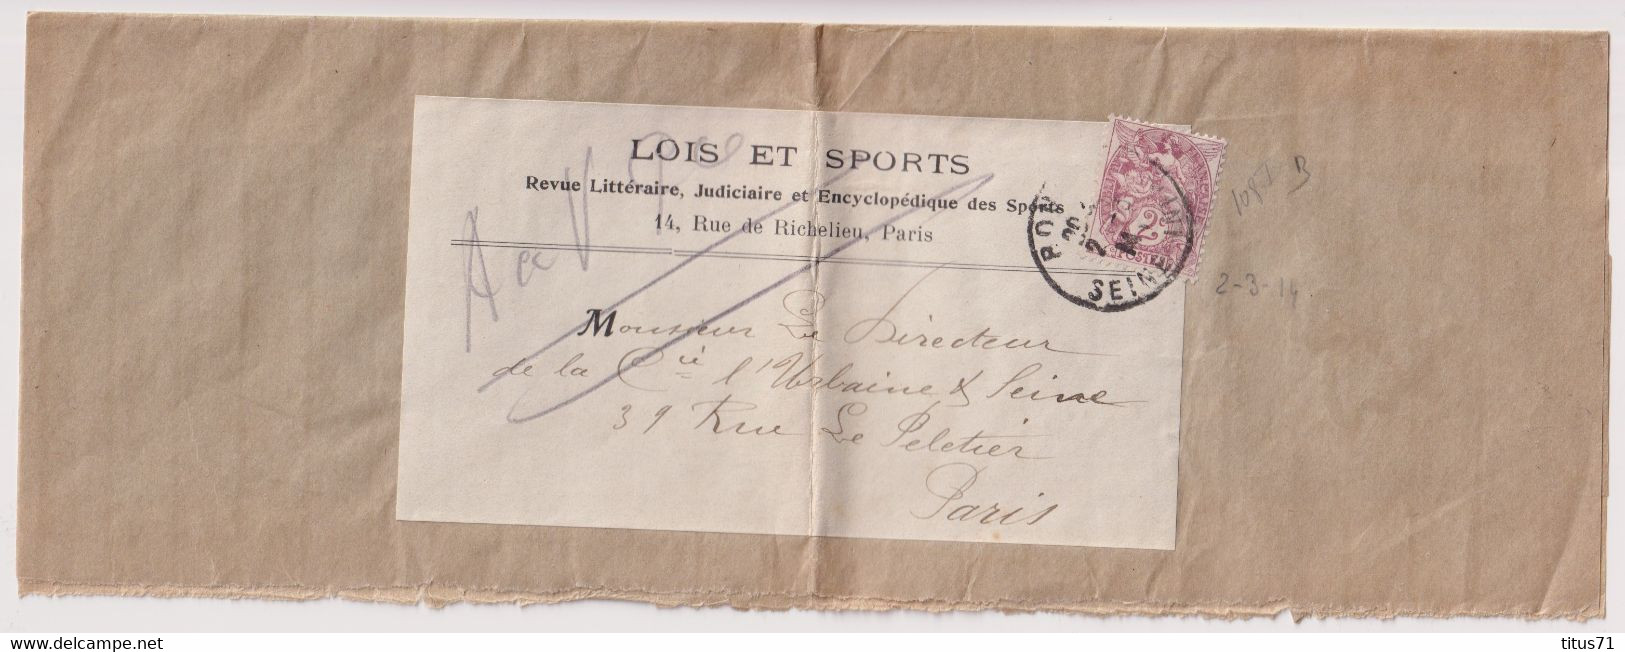 Bande De Journal Timbre 2 Centimes Sage - Journal Lois Et Sports - Circulée 1914 - Journaux